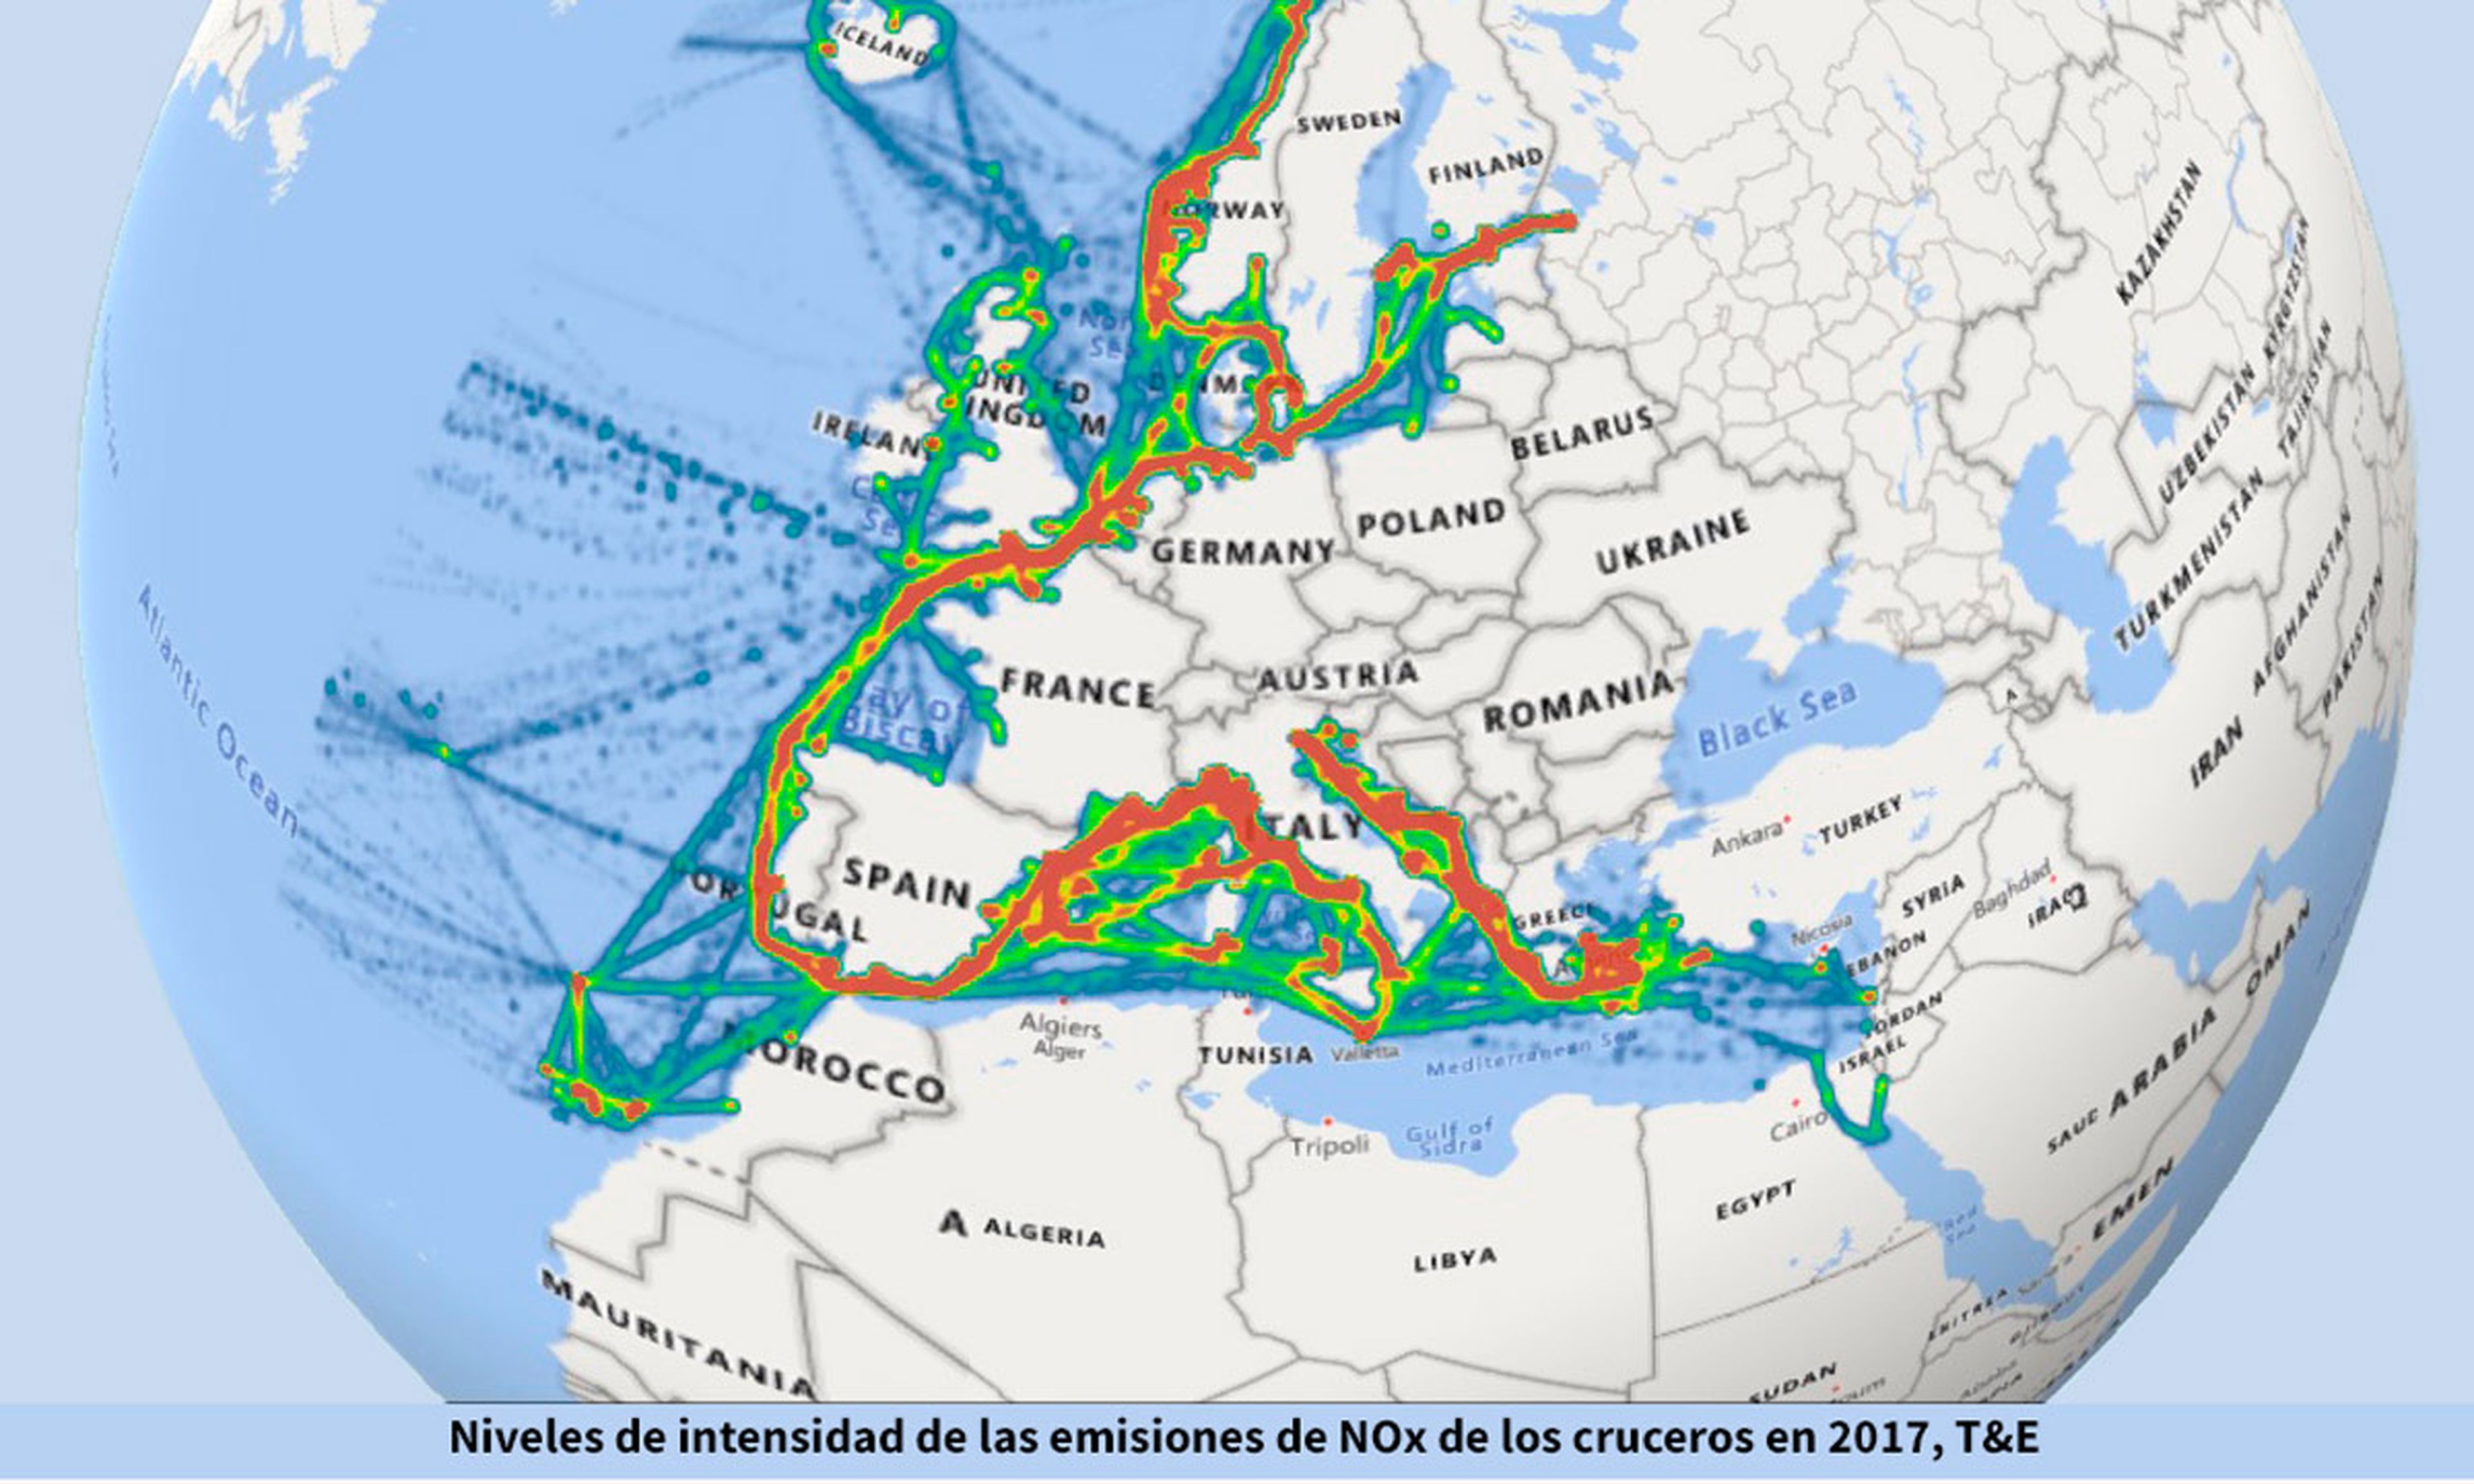 Ruta de la mayoría de los cruceros europeos y emisiones de NOx.